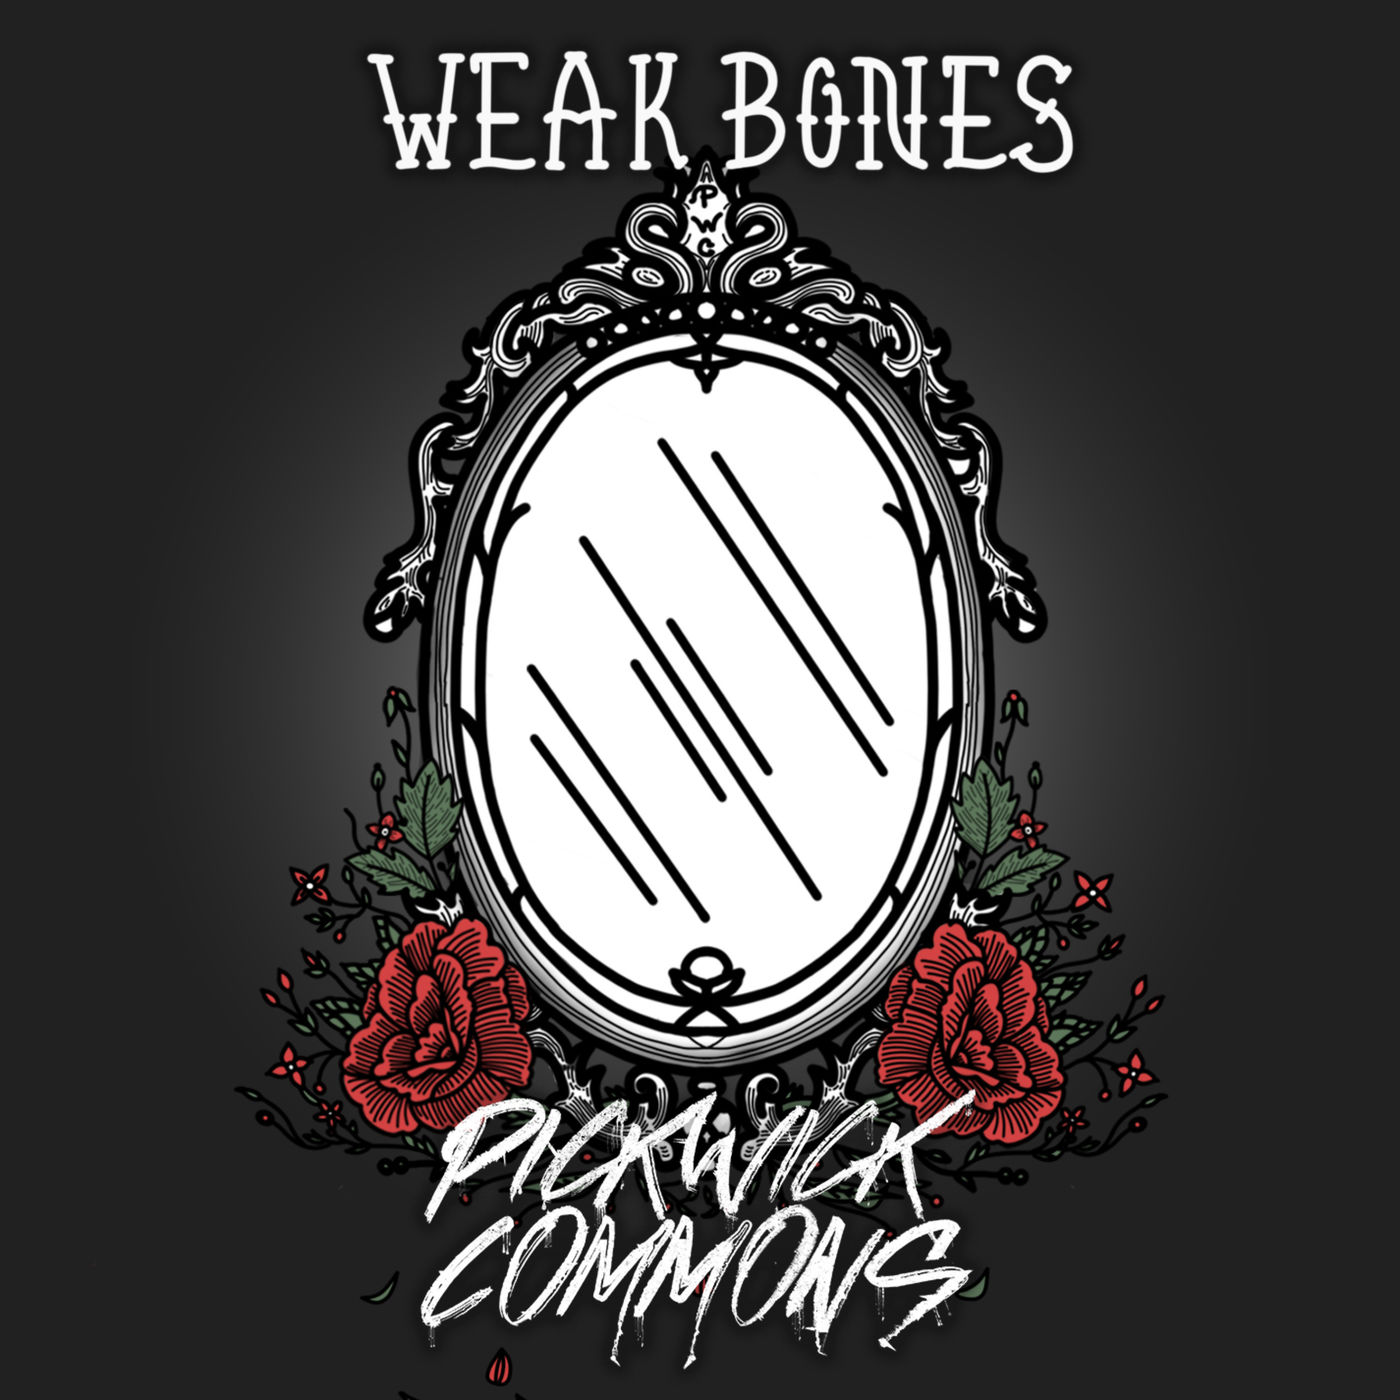 Pickwick Commons - Weak Bones (2019)